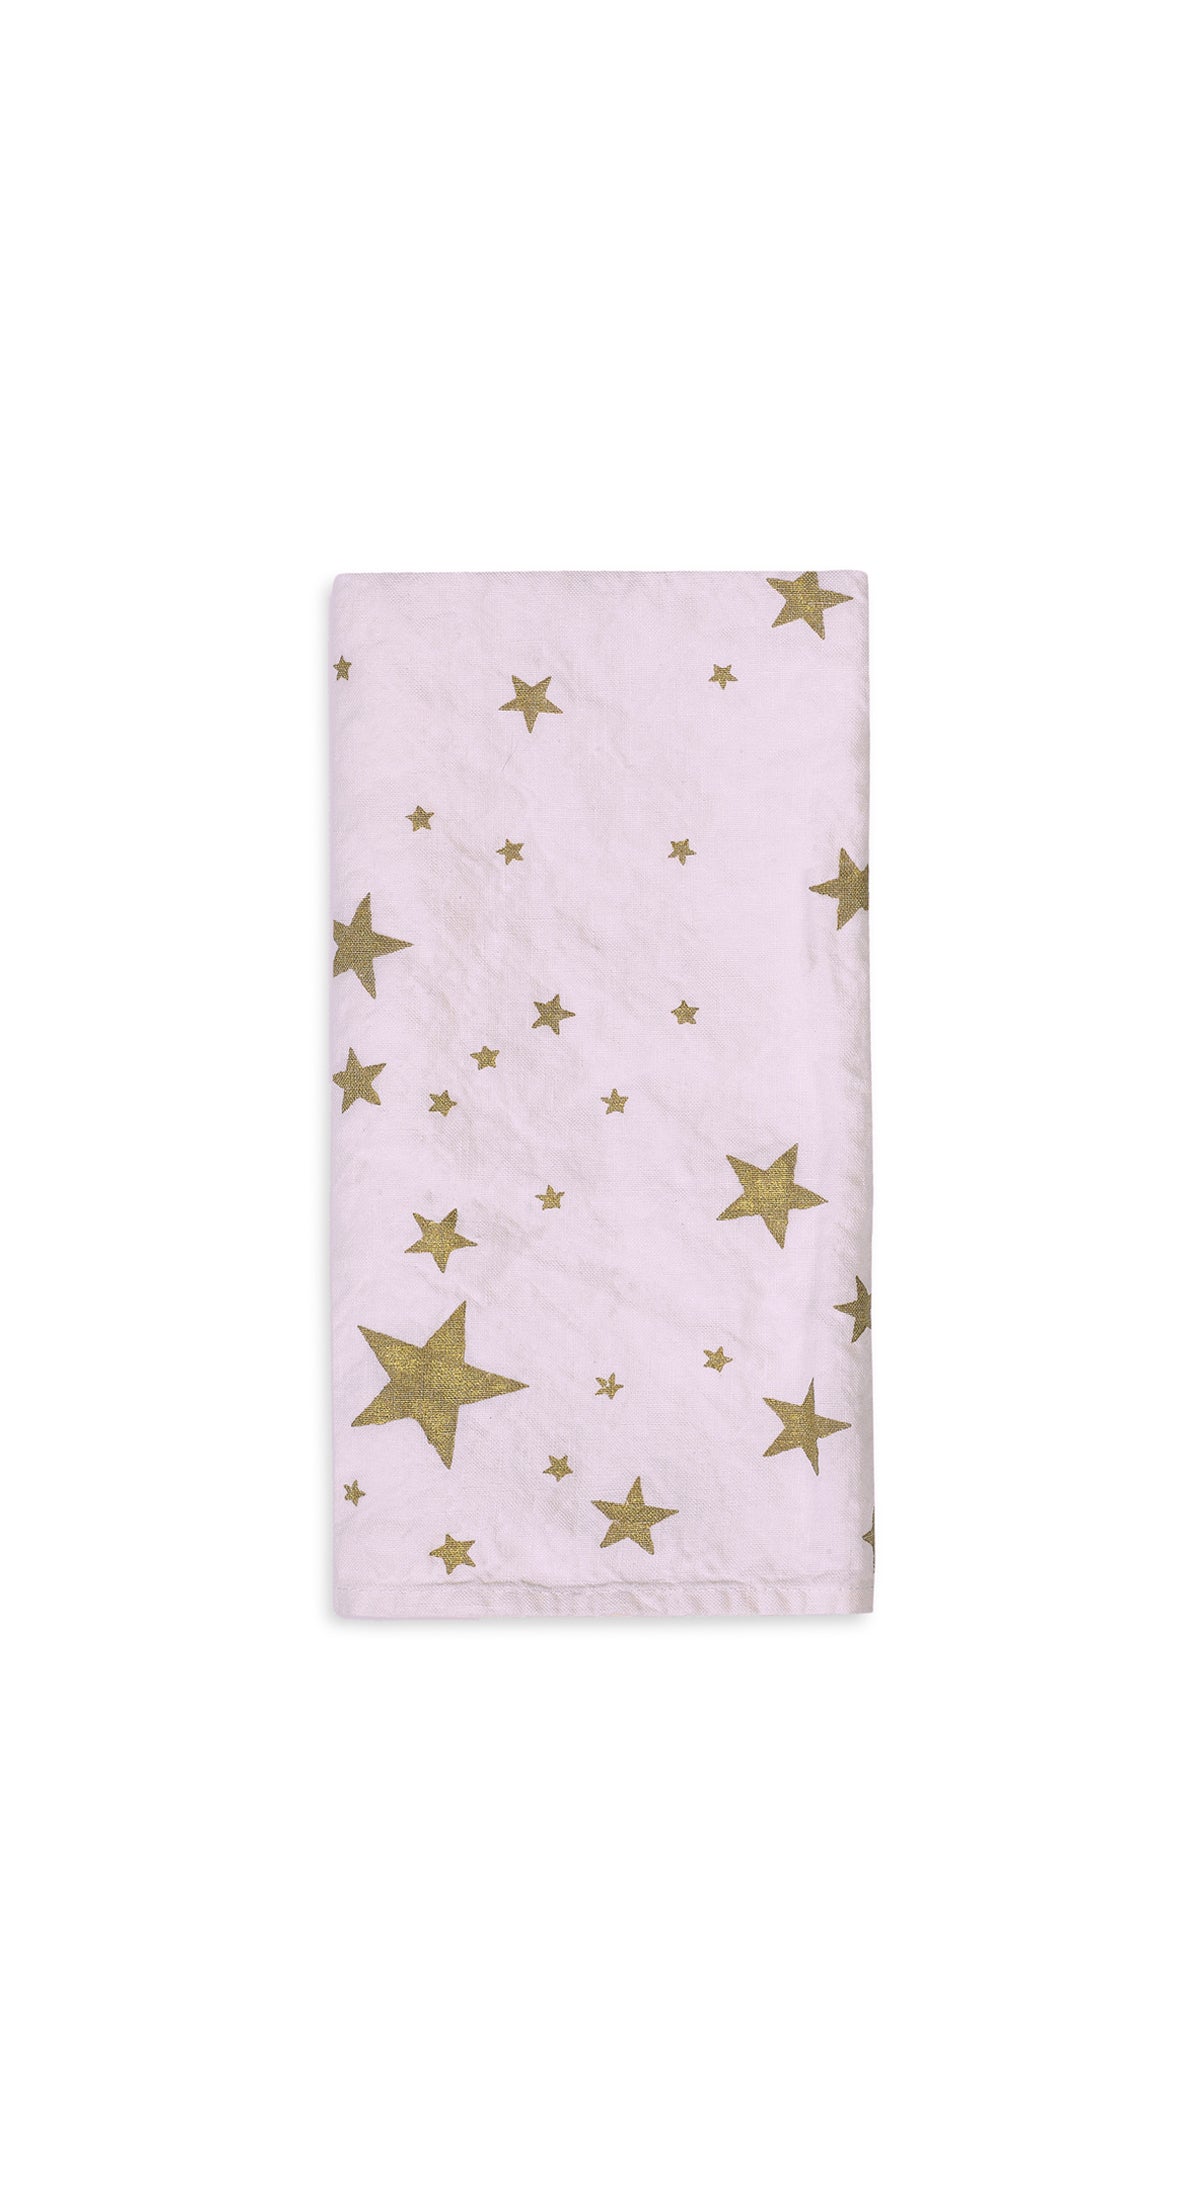 Falling Stars Linen Napkin in Light Pink, 50x50cm